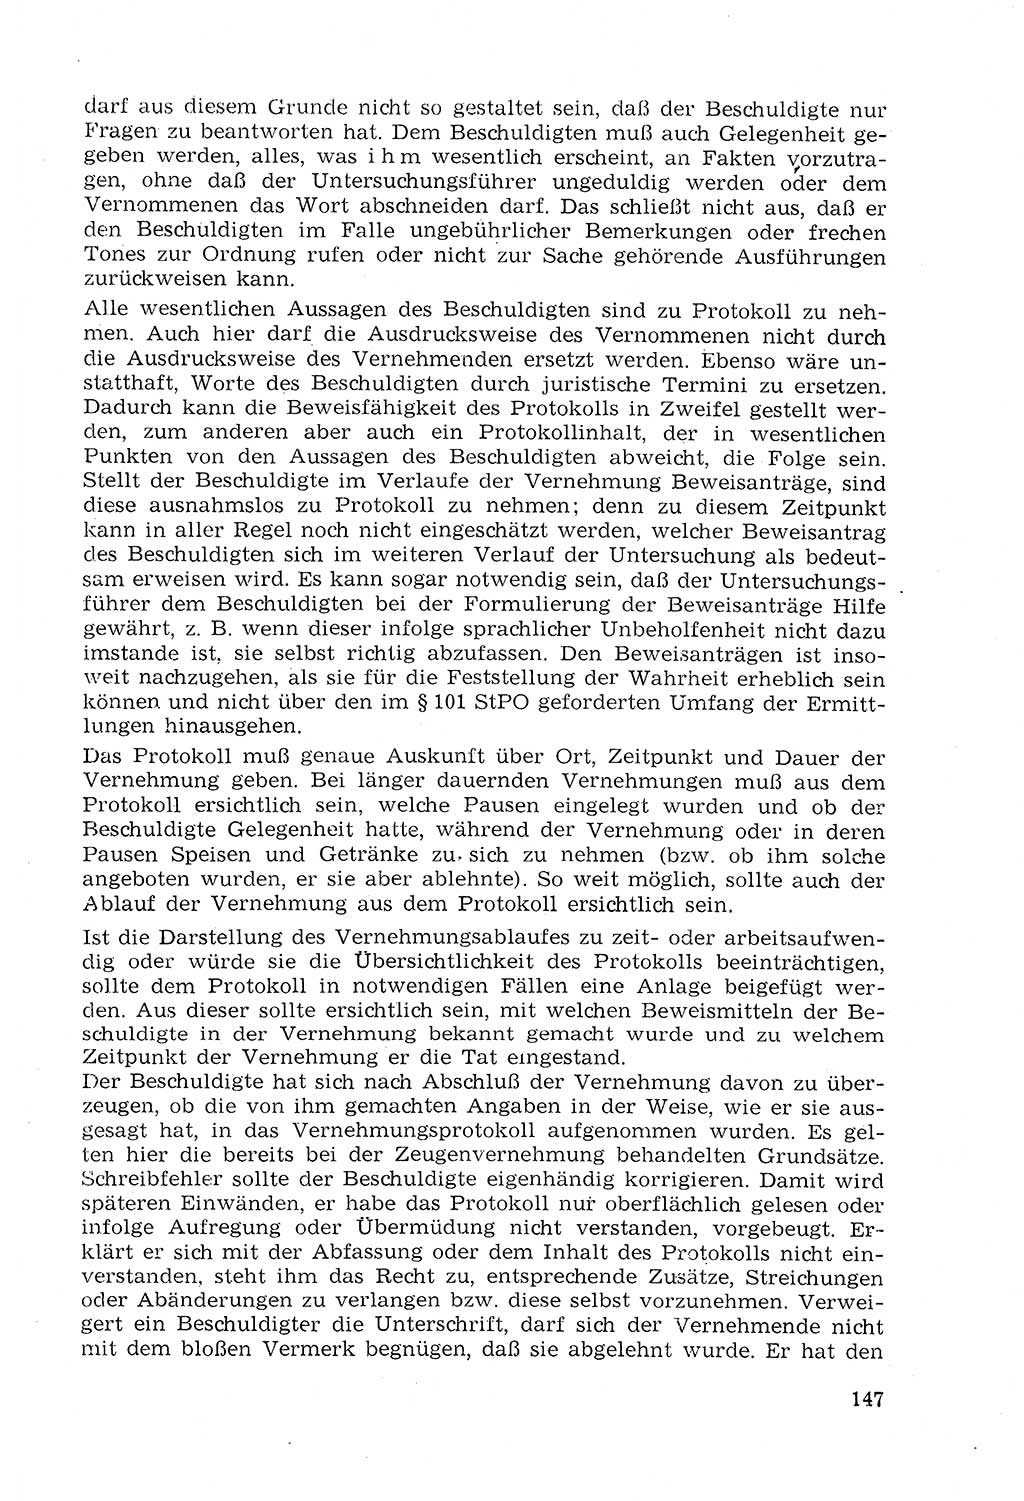 Strafprozeßrecht der DDR (Deutsche Demokratische Republik), Lehrmaterial 1969, Seite 147 (Strafprozeßr. DDR Lehrmat. 1969, S. 147)